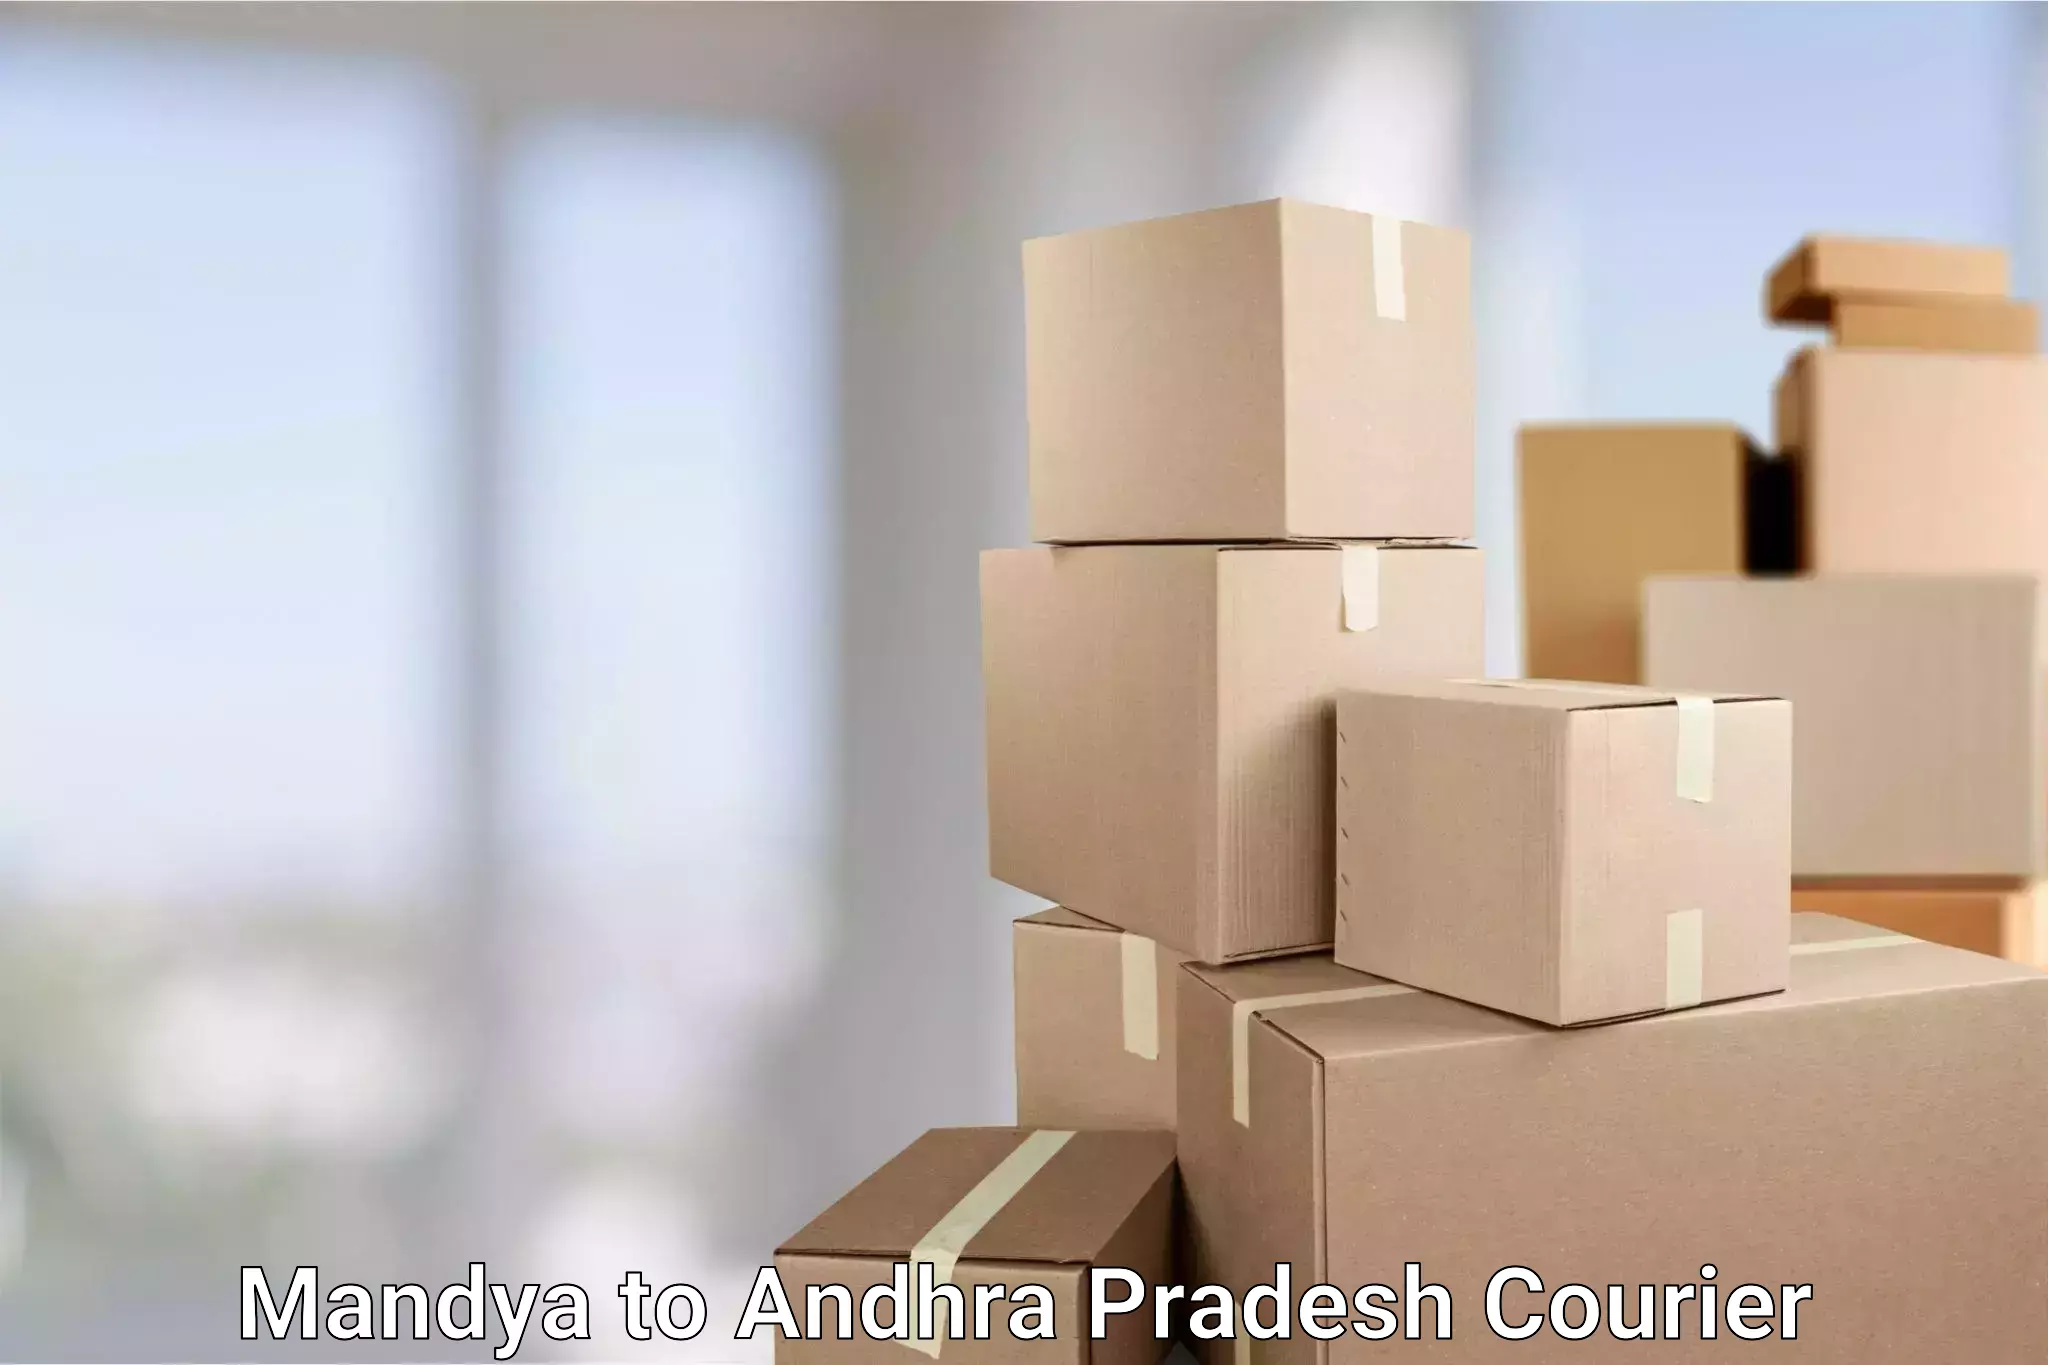 High-capacity parcel service Mandya to Bhimavaram